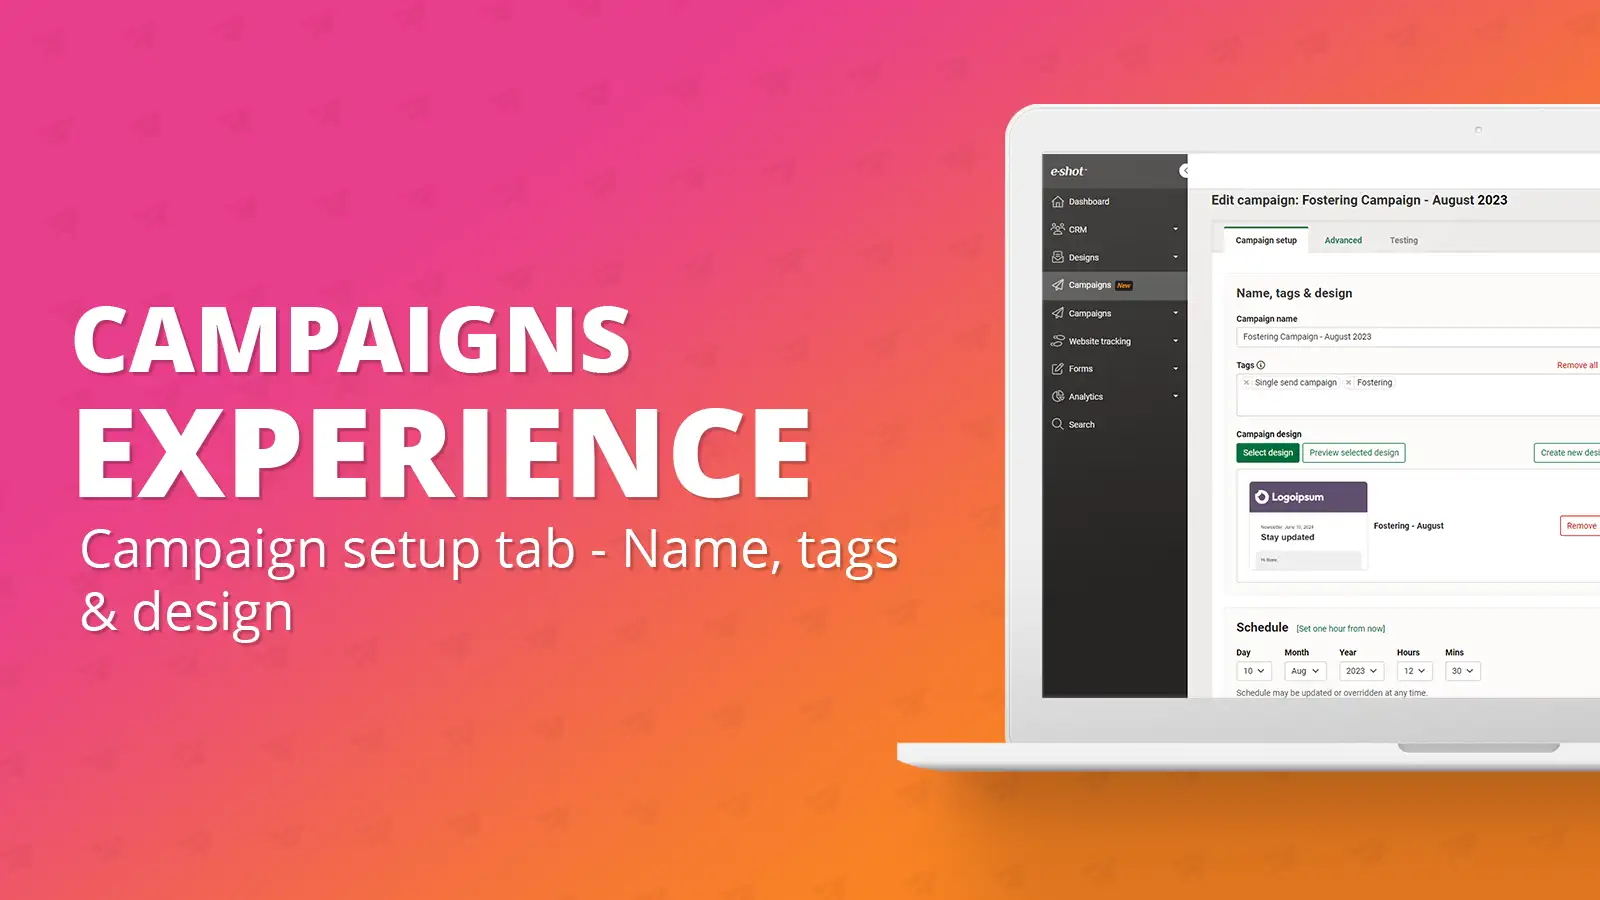 Campaign setup tab: Name, tags & design